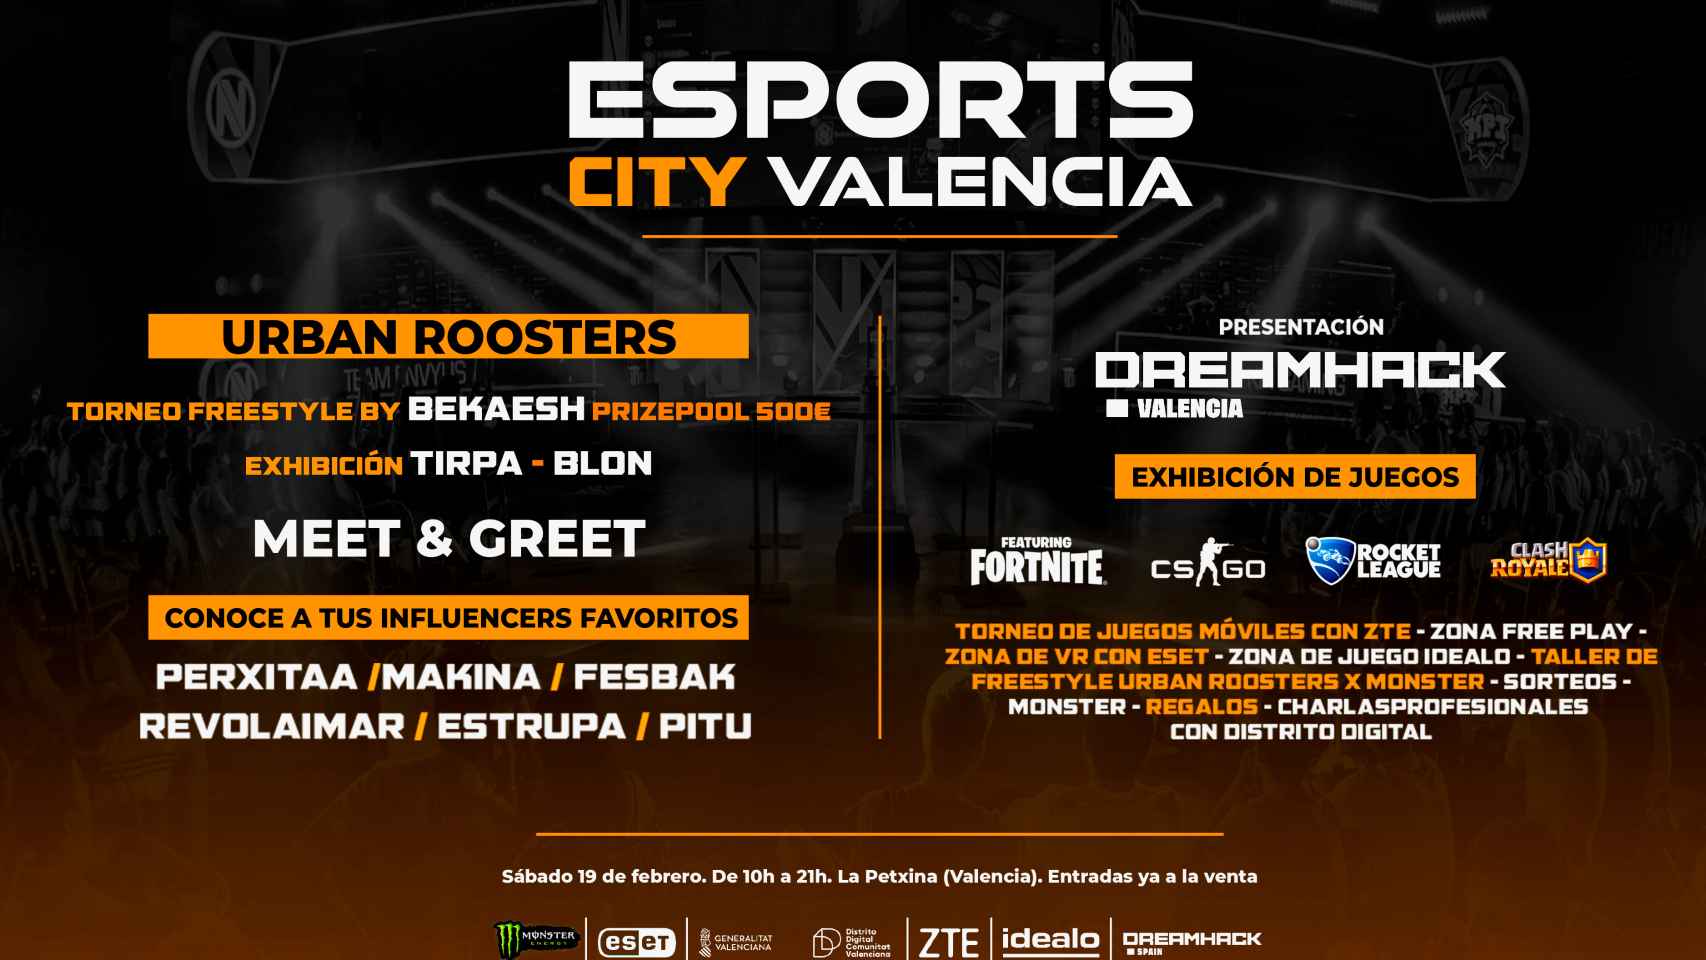 Programa y actos del evento presencial Esports City Valencia del 19 de febrero.